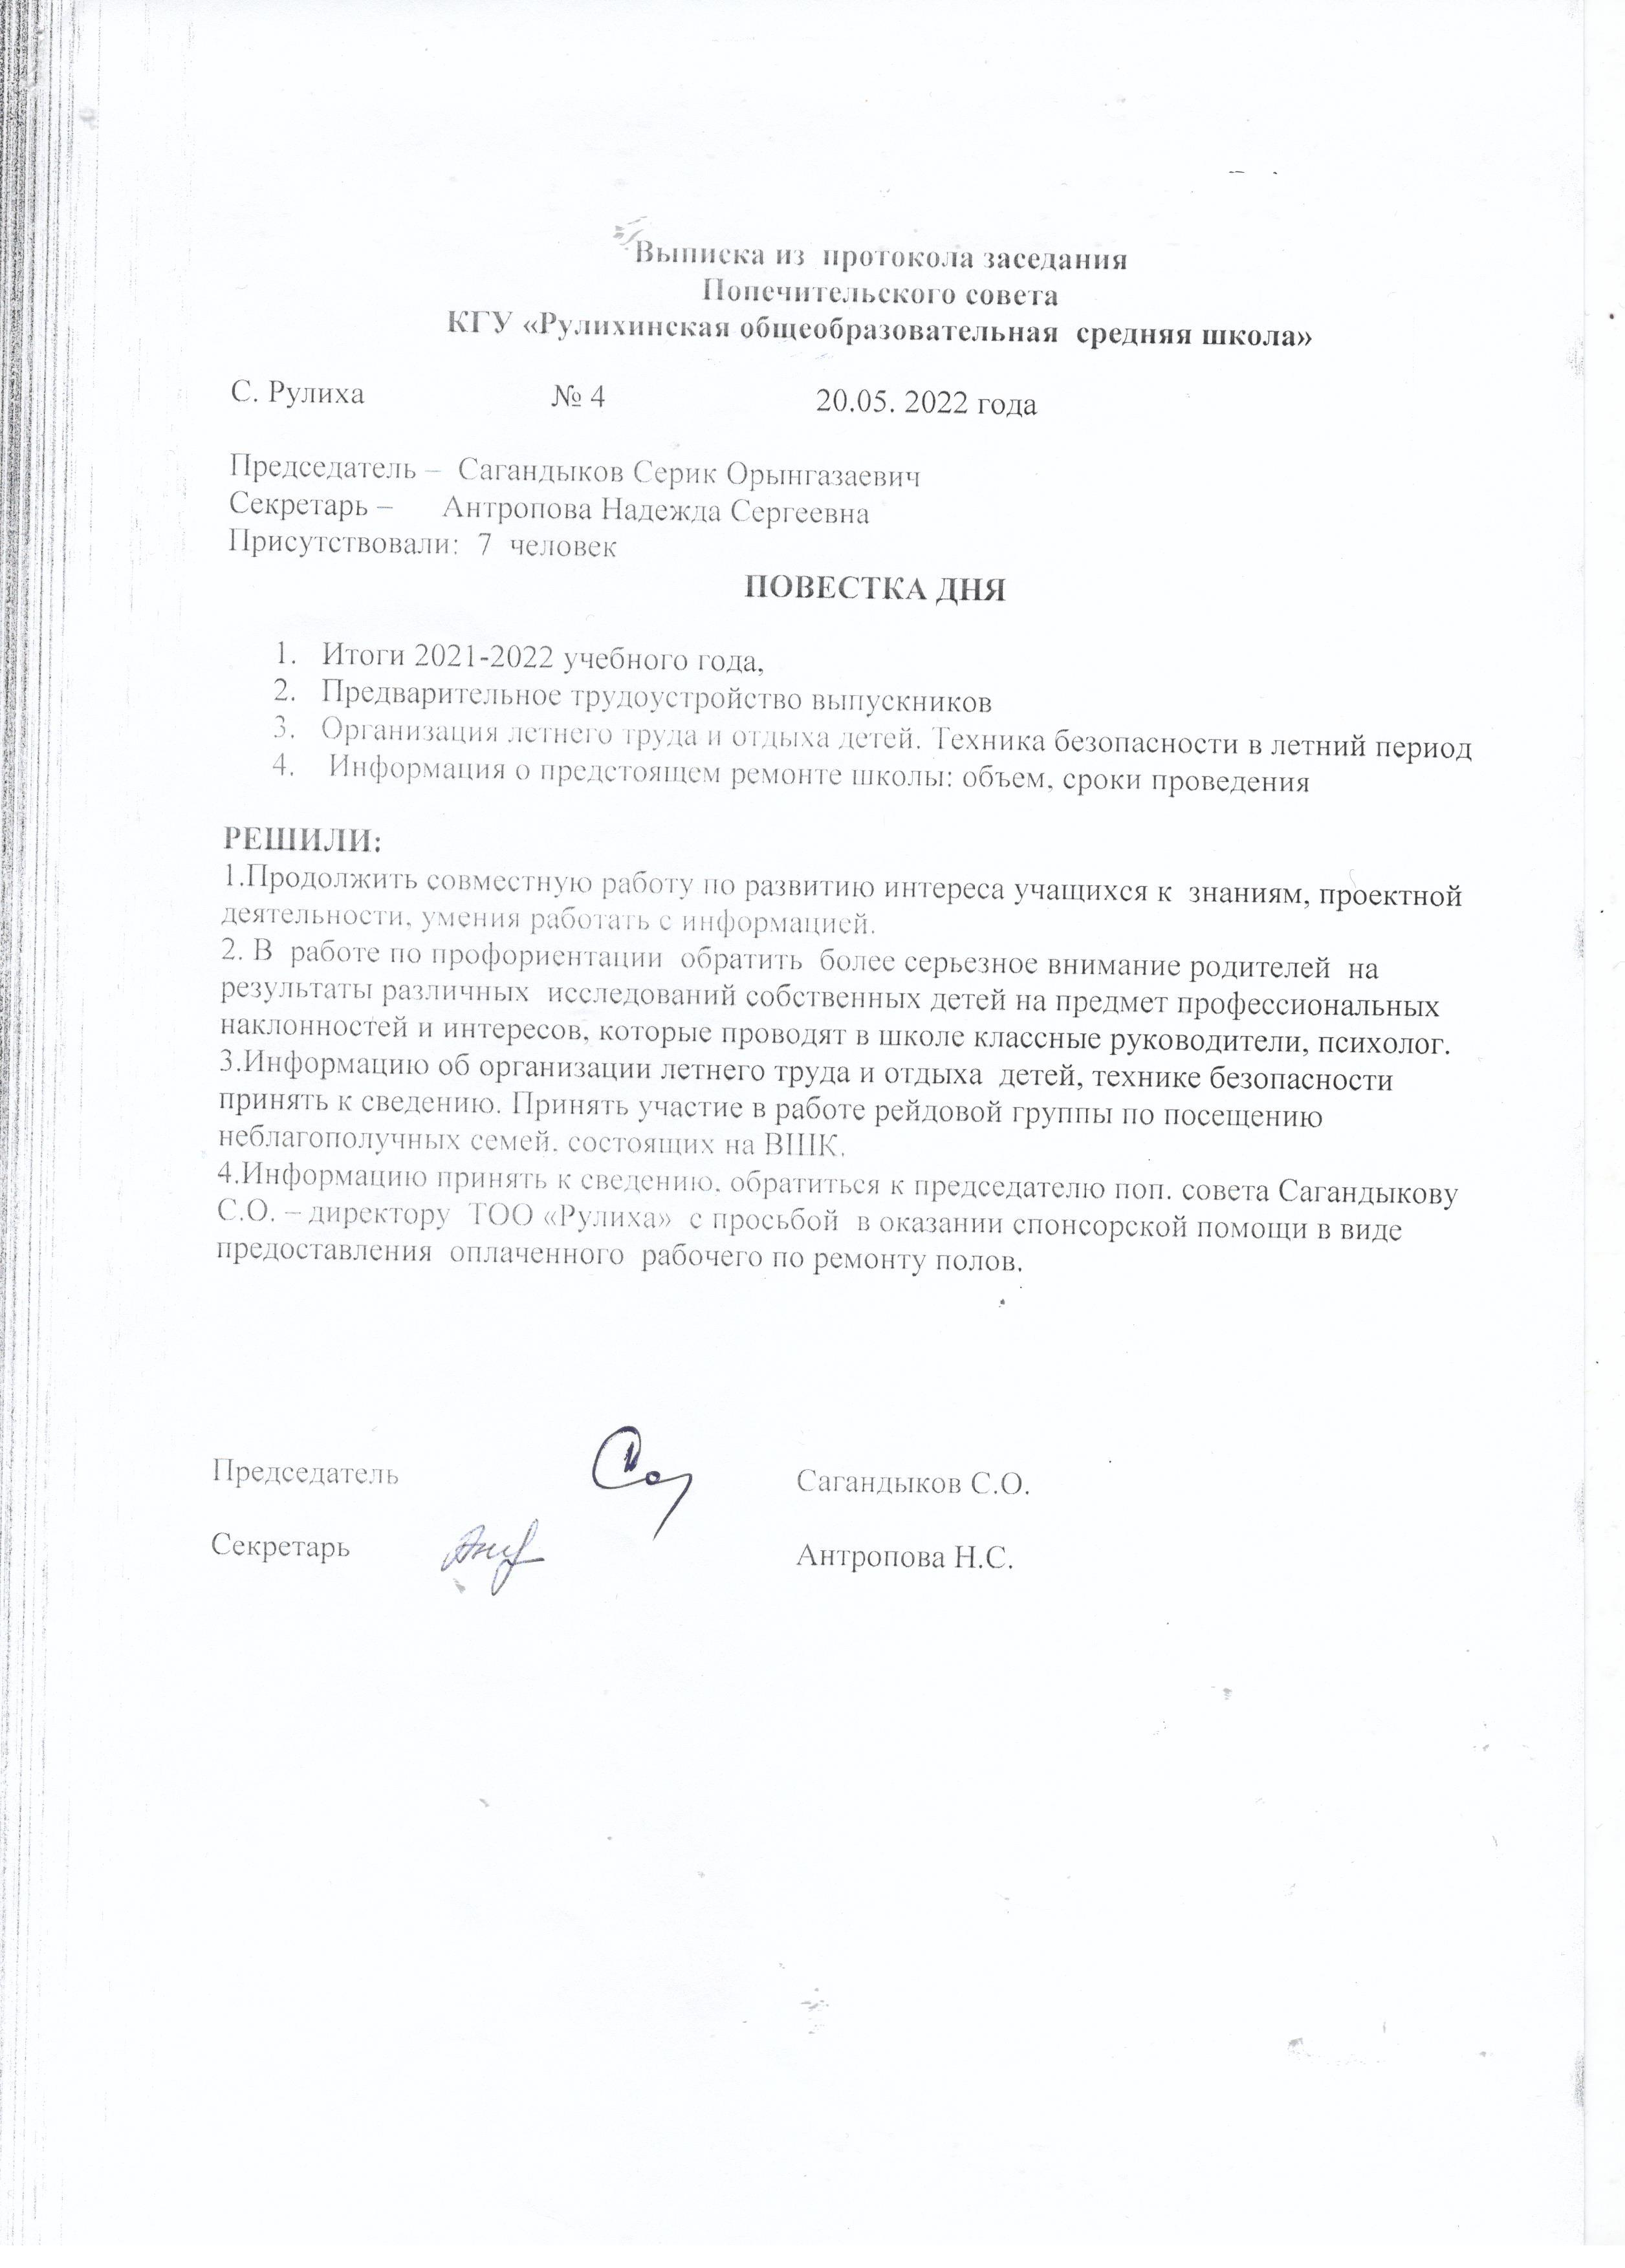 Выписка из протокола заседания Попечительского совета КГУ "Рулихинская осш"